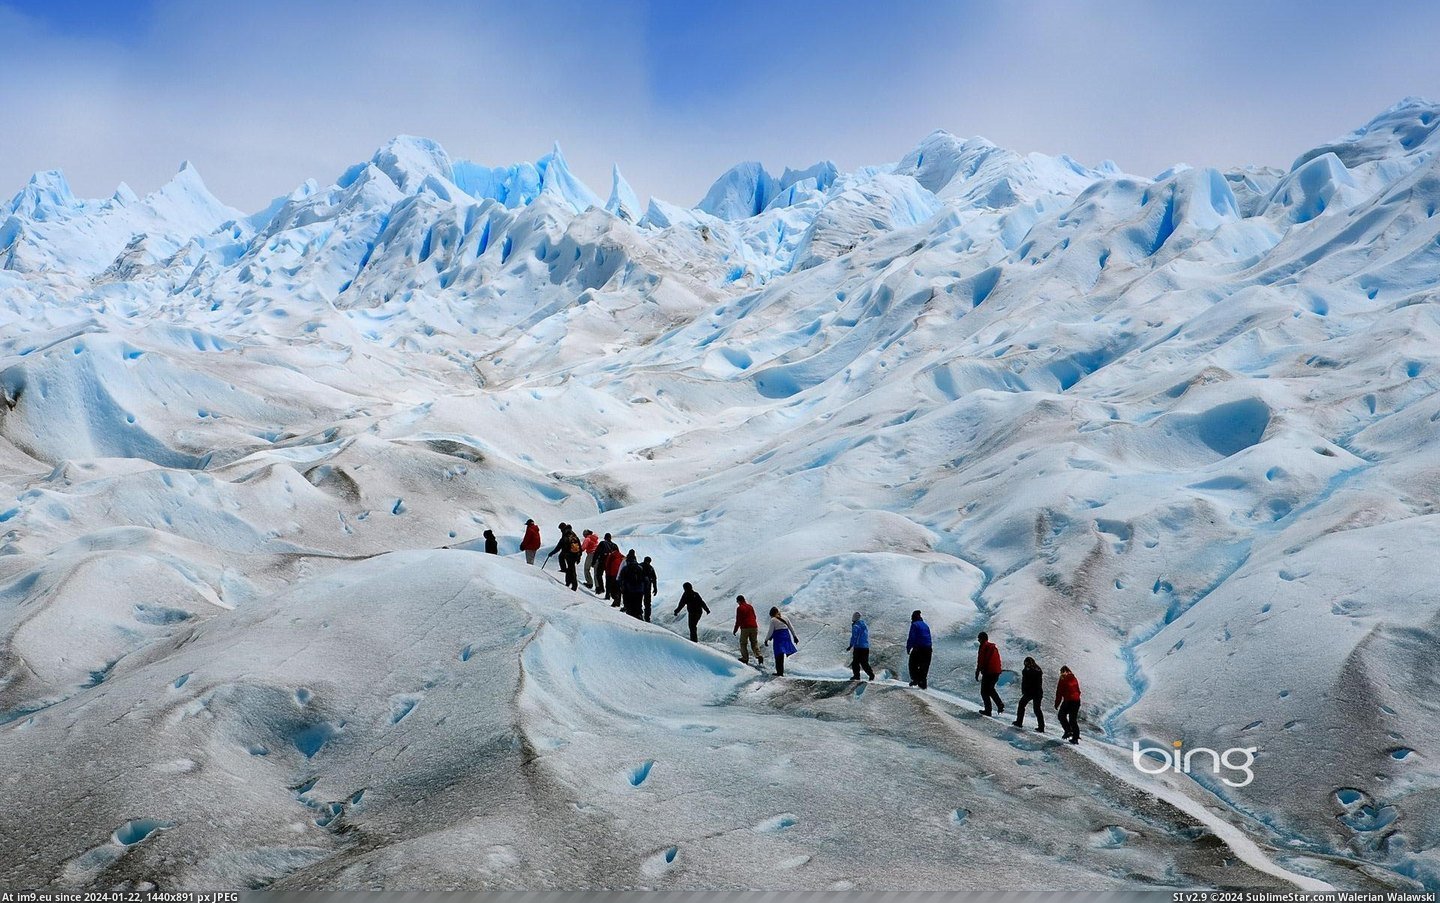 Perito Moreno glacier in Los Glaciares National Park, Patagonia, Argentina (in Bing Photos November 2012)